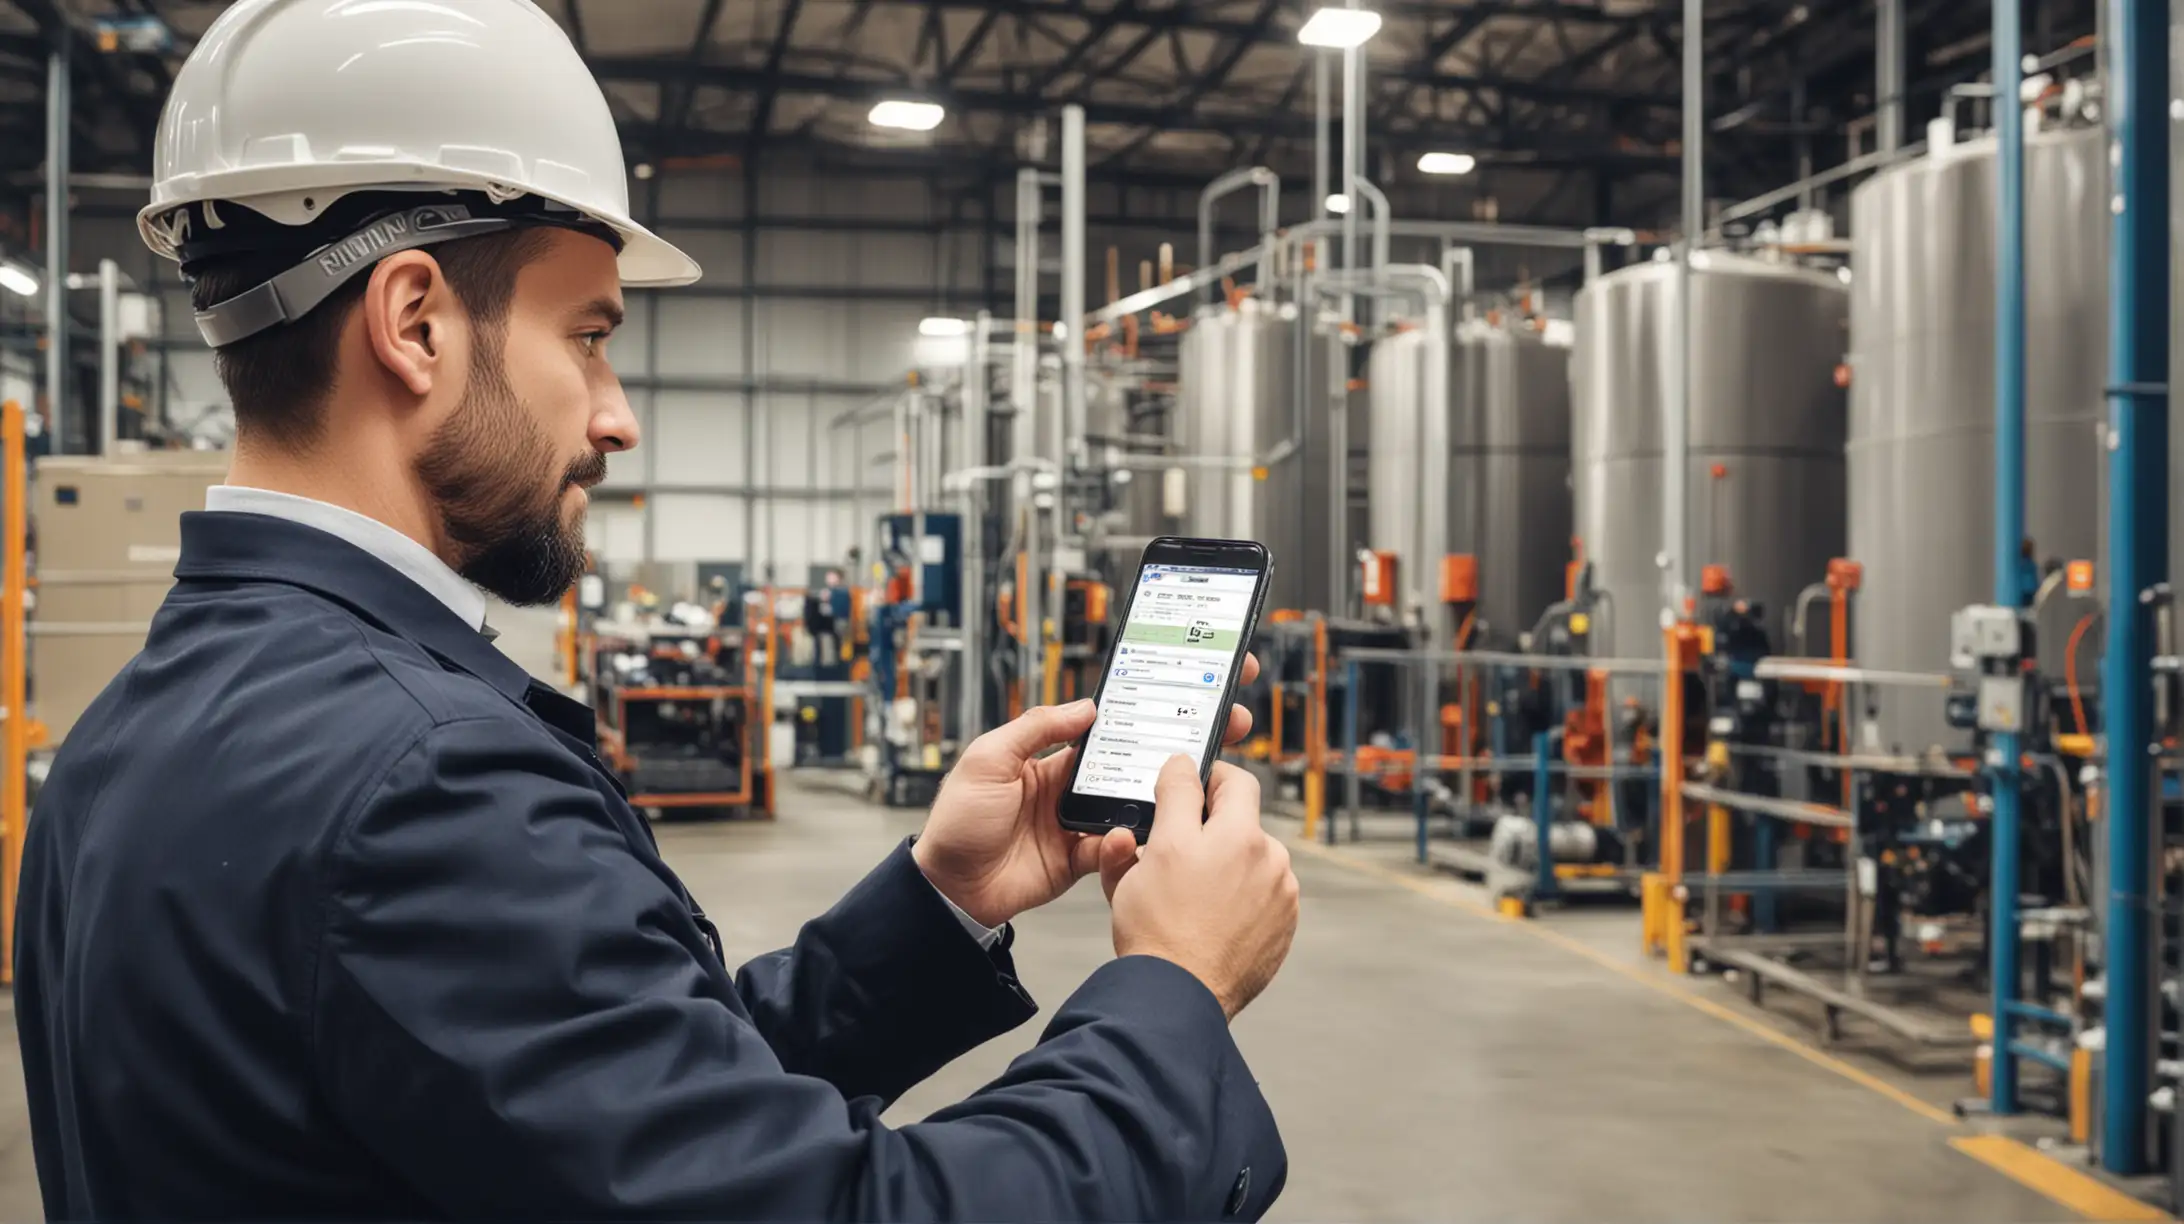 Supervisor controla recorridos en fábrica desde su smartphone con Rondinc. Eficiencia y seguridad en la industria.